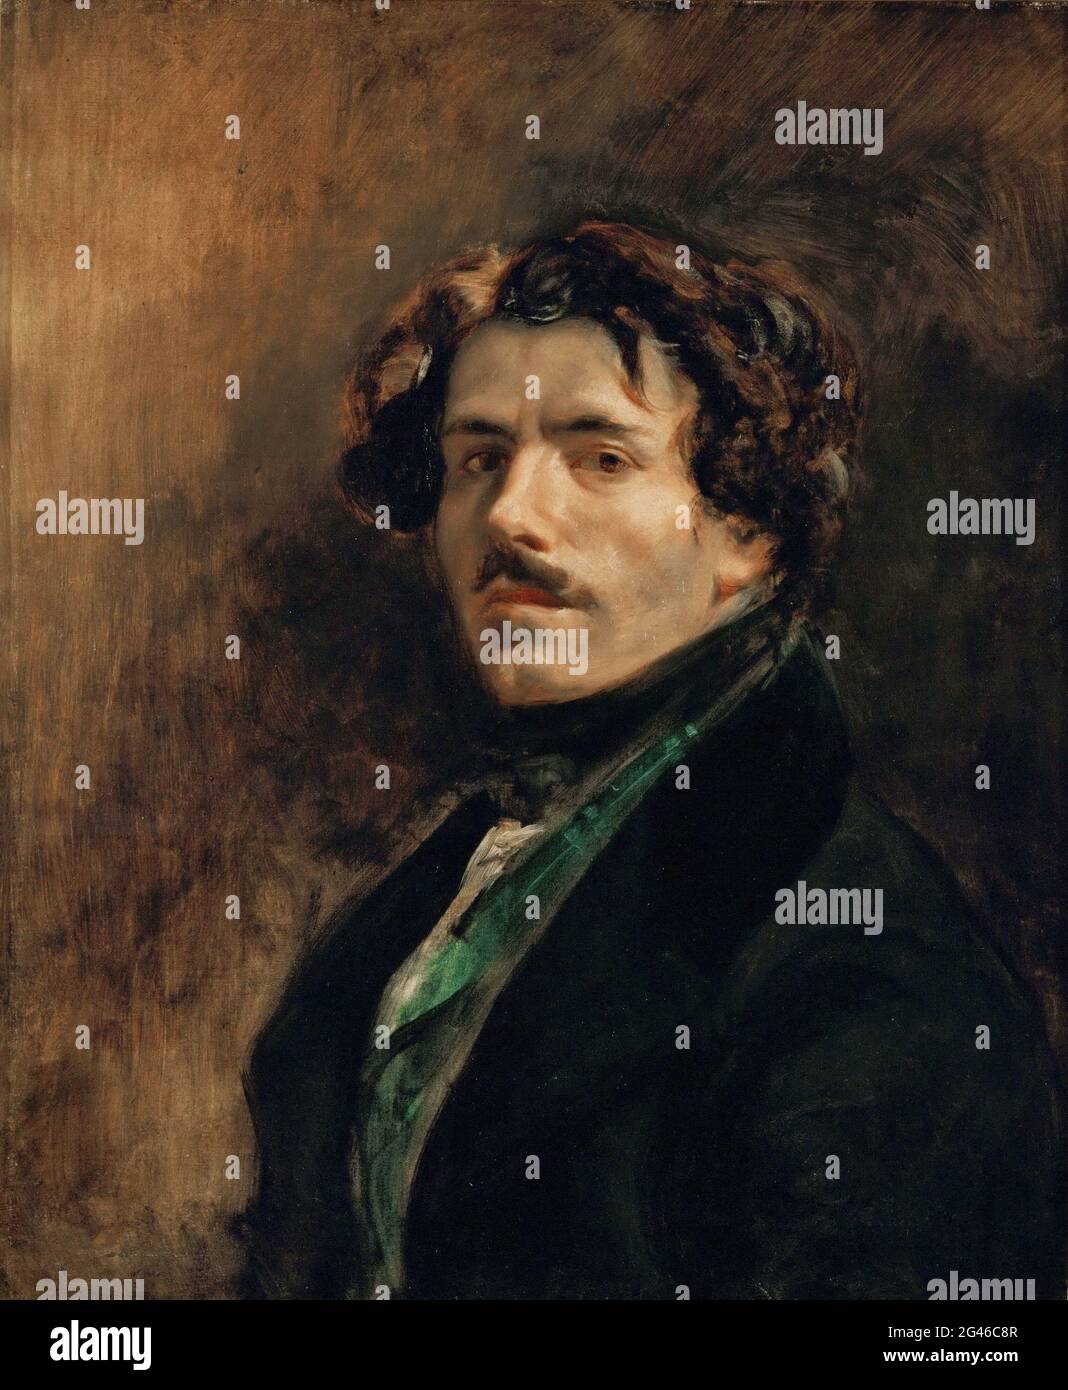 Titolo: Autoritratto Creatore: Eugène Delacroix Data: c.1837 mezzo: Olio su tela dimensioni: 65x54 cm Ubicazione: Louvre, Parigi, Francia Foto Stock